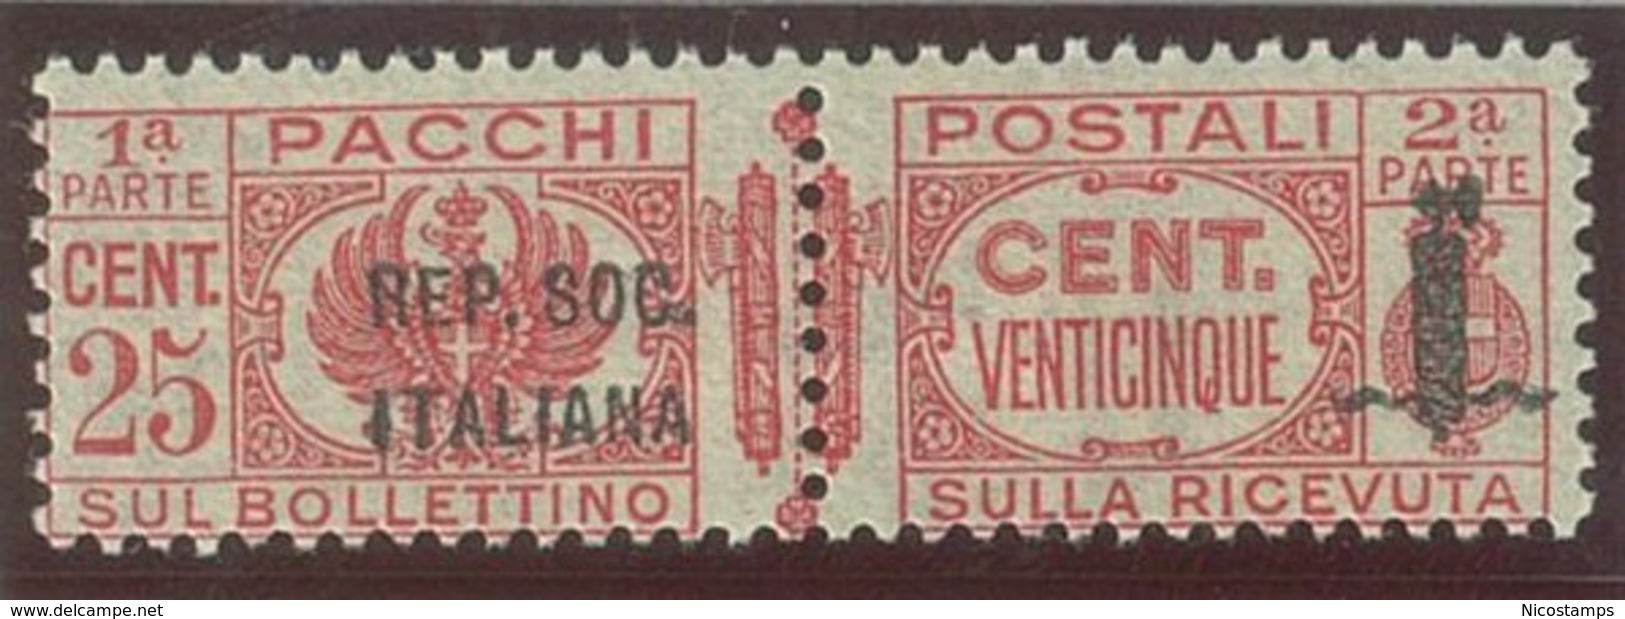 ITALIA REPUBBLICA SOCIALE ITALIANA (R.S.I.) SASS. P.P. 38a  NUOVO - Postpaketten